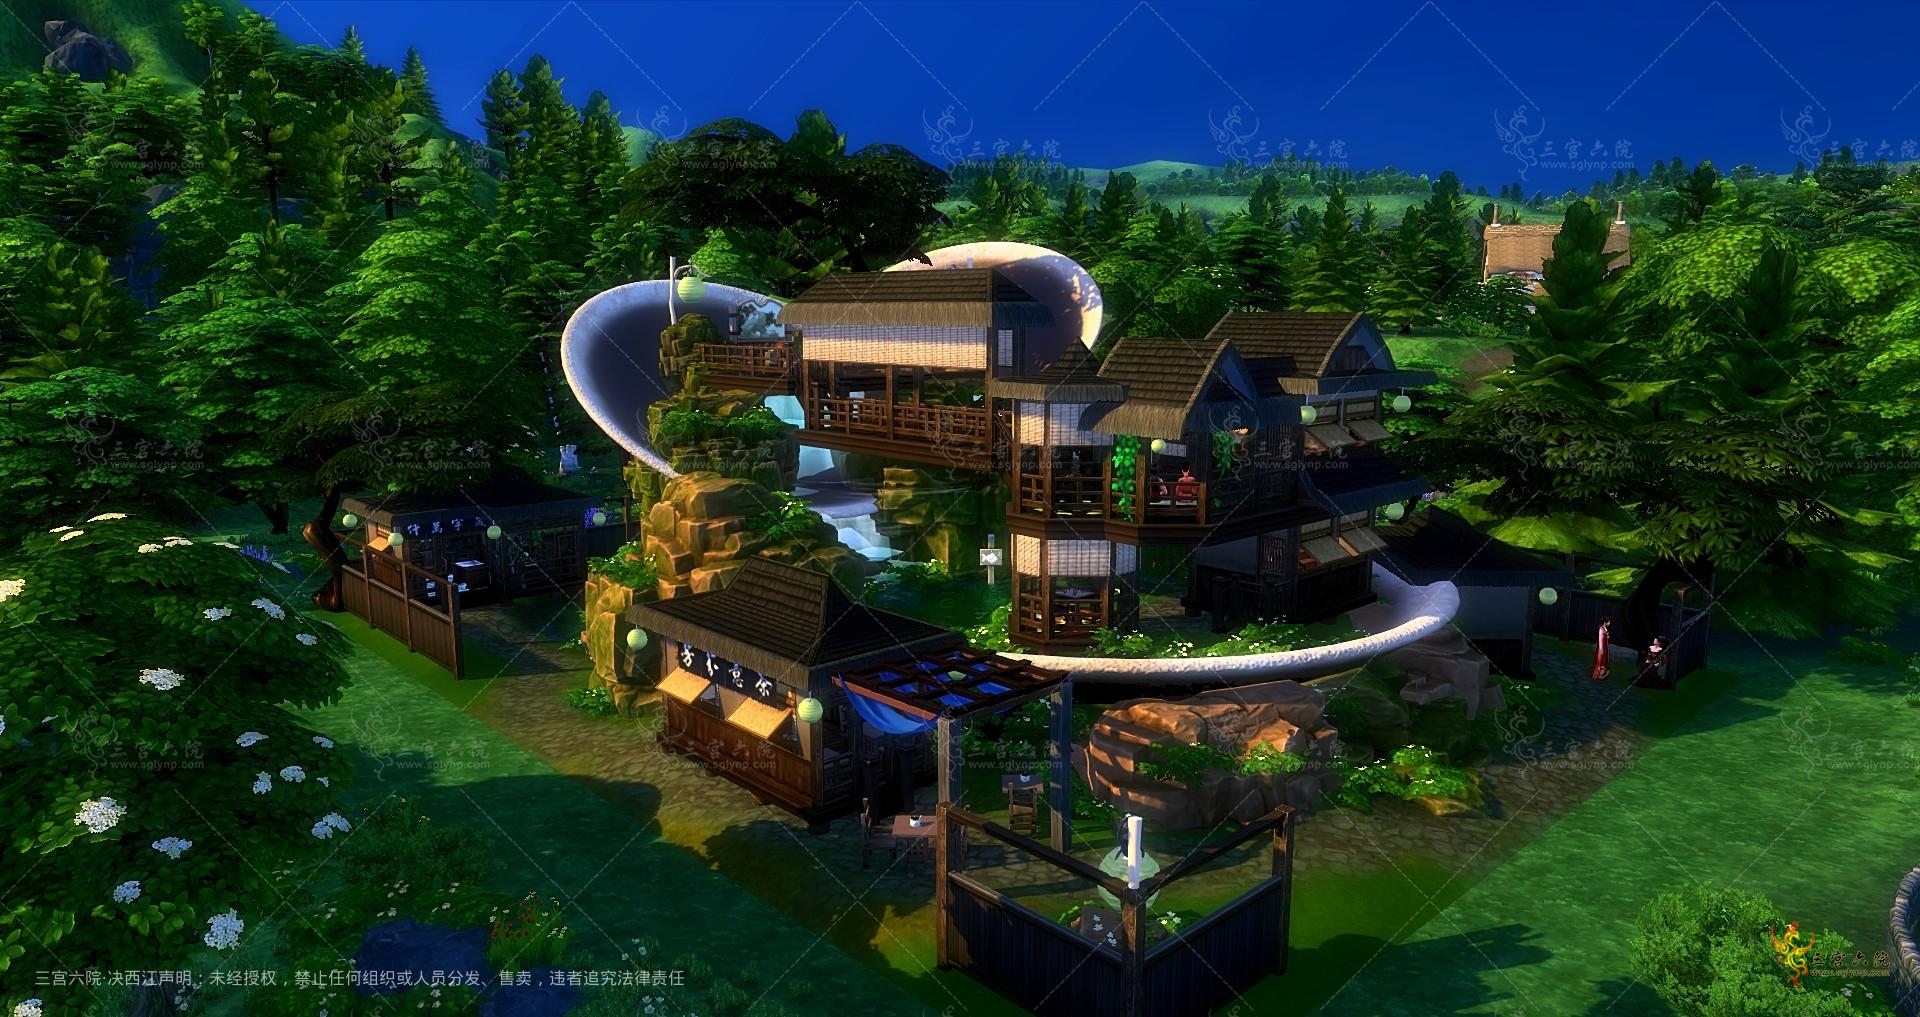 Sims 4 Screenshot 2022.07.29 - 00.11.02.09.png